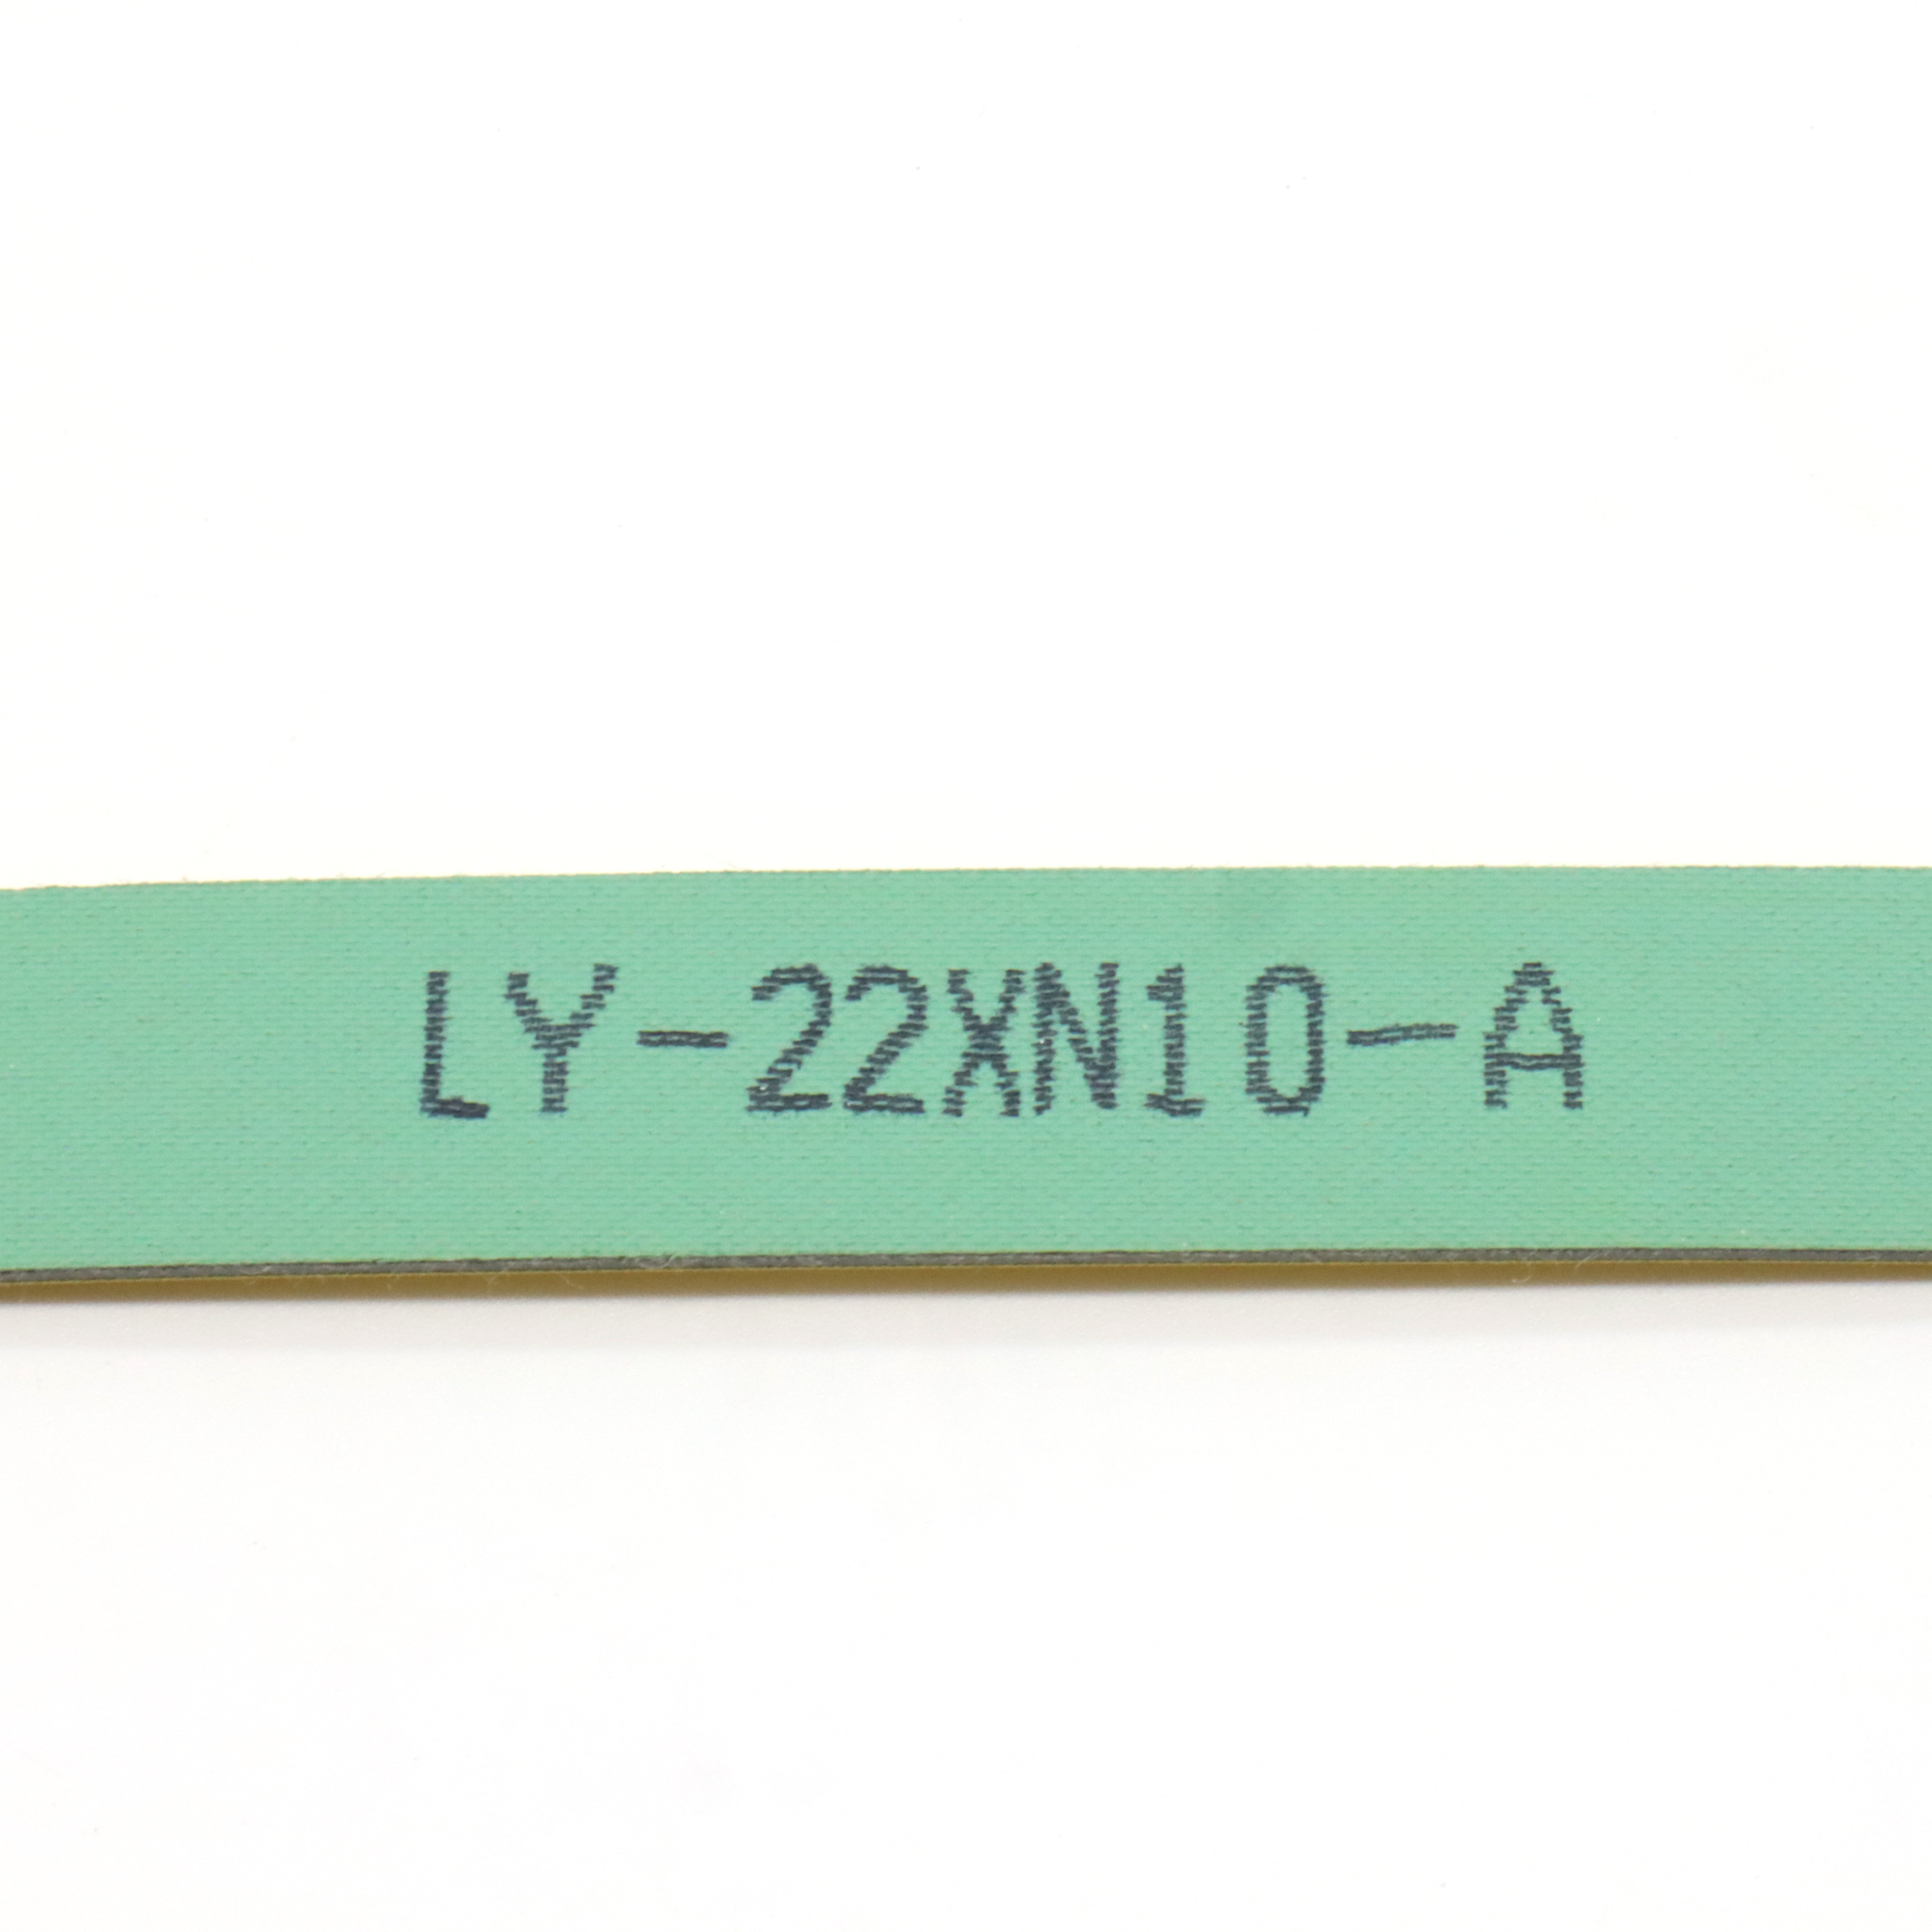 LY-22XN10-A